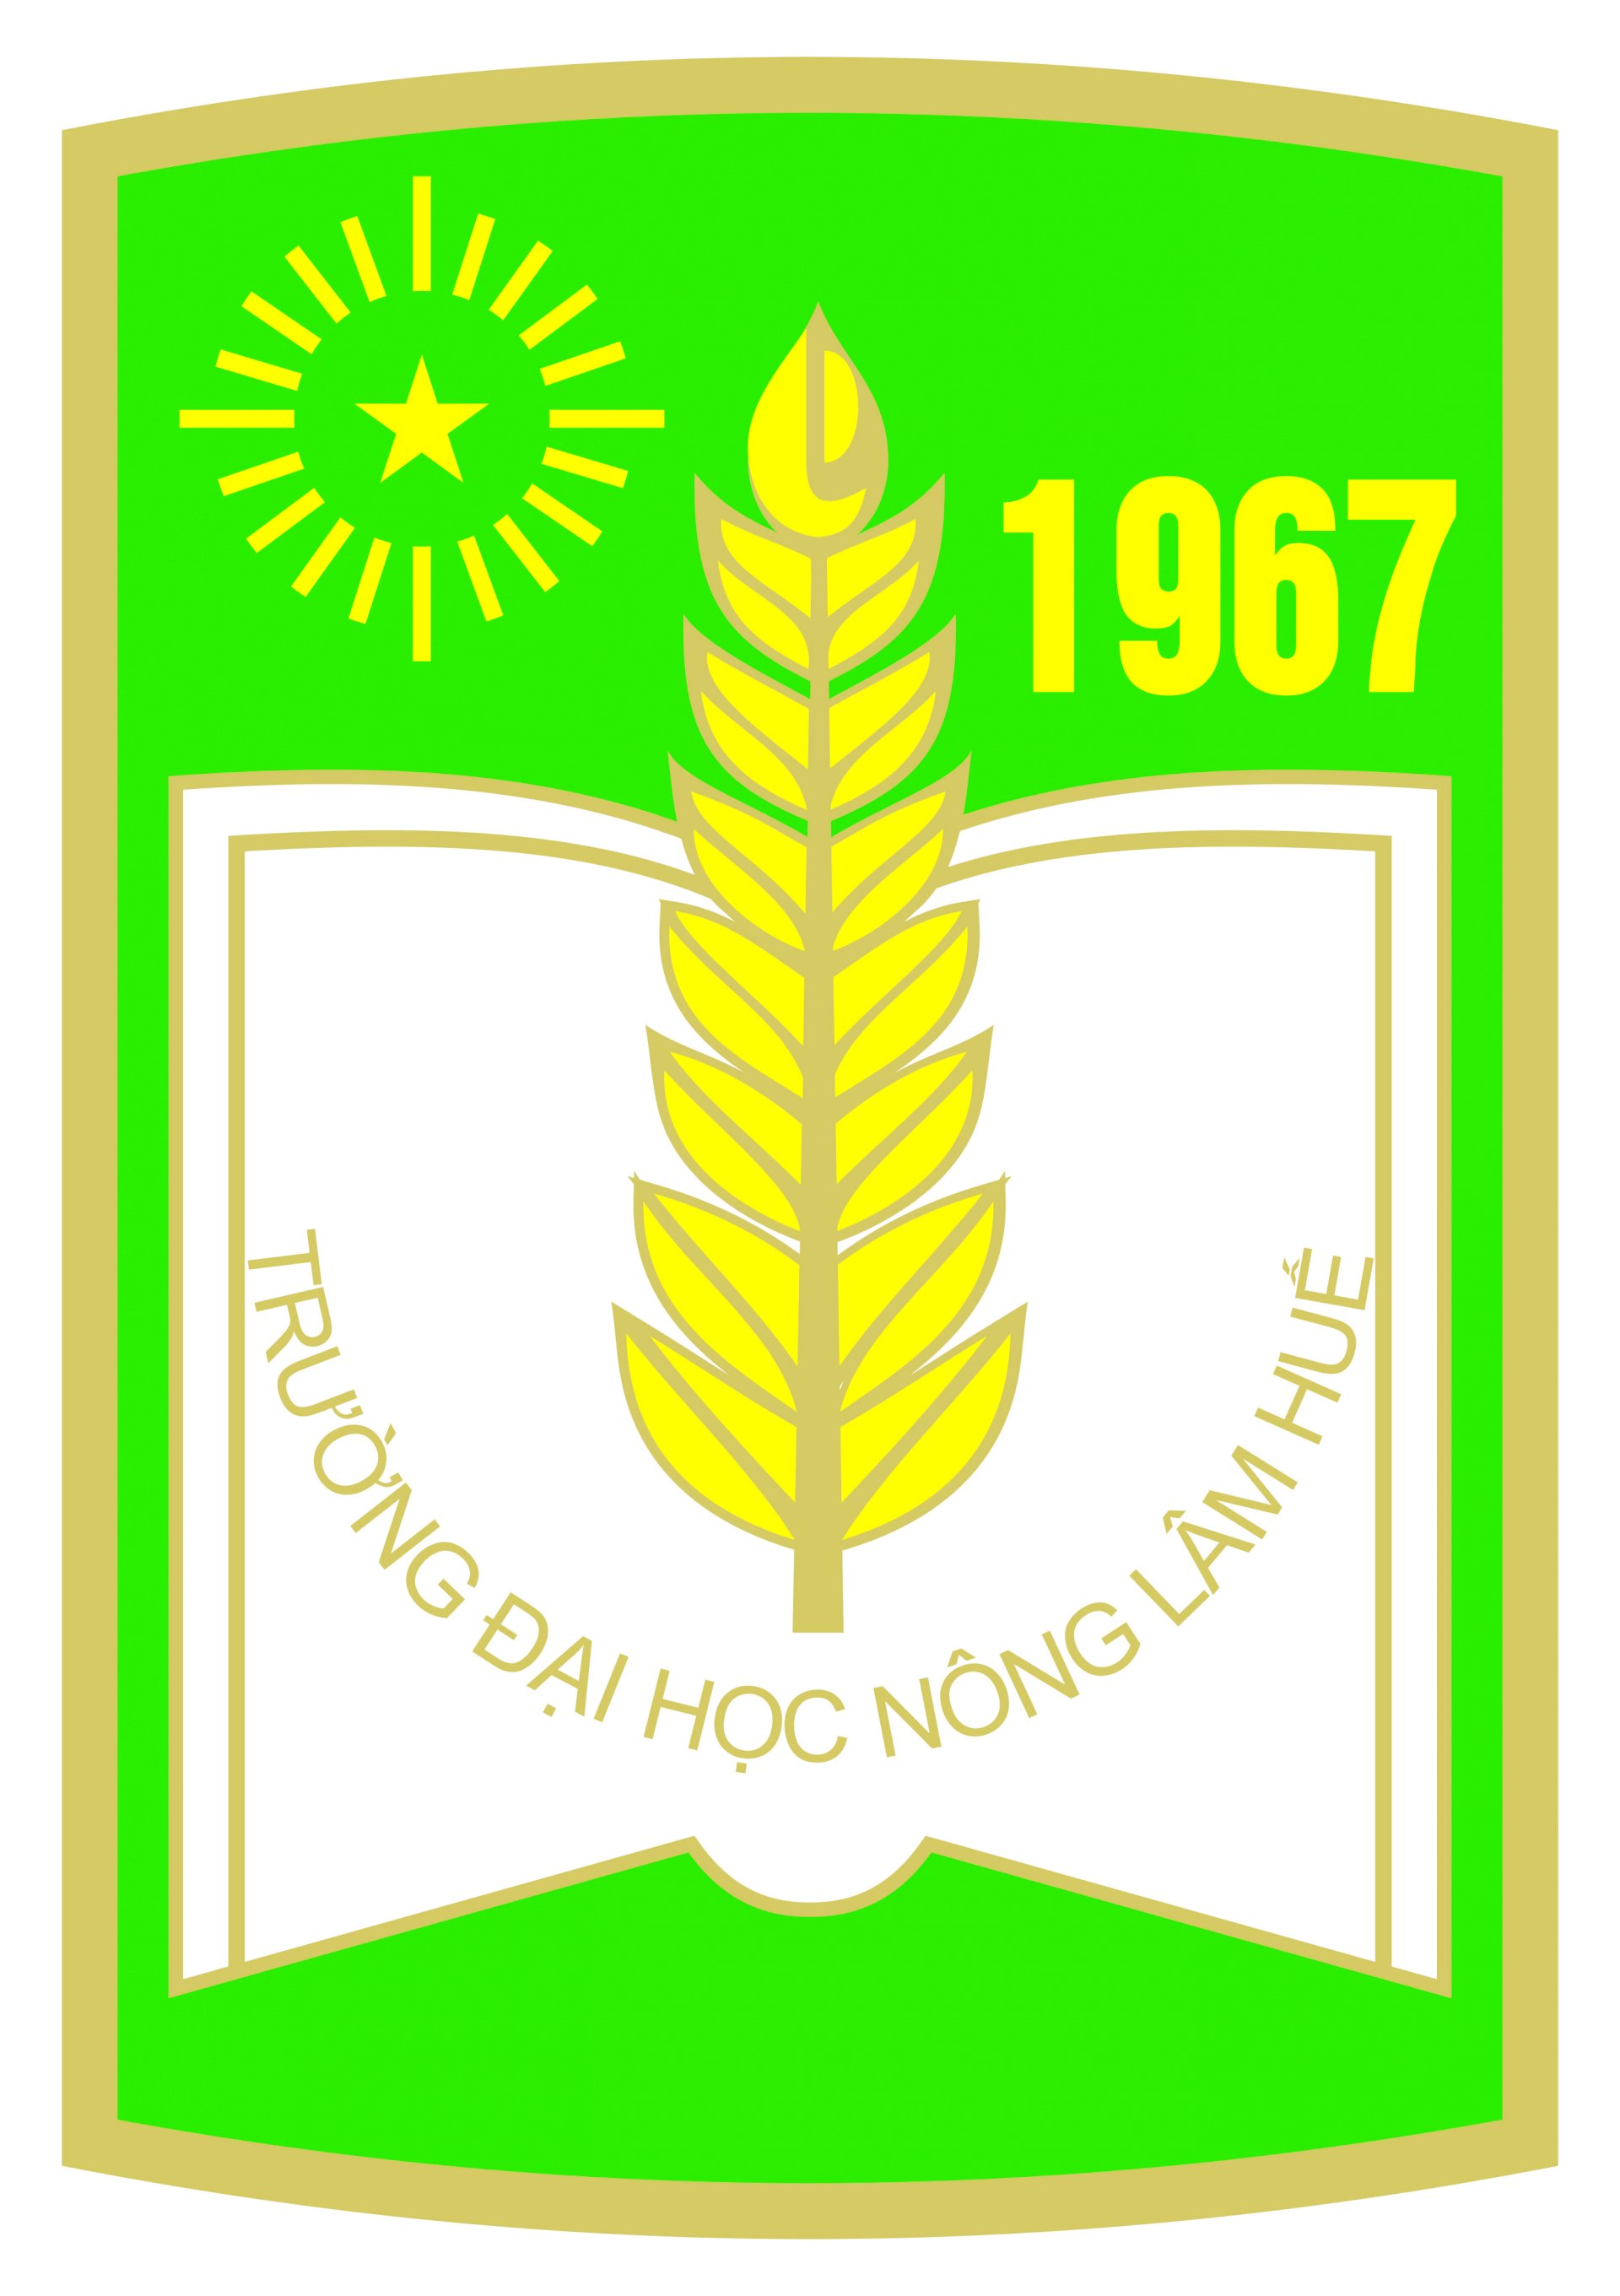 Tải mẫu logo trường đại học nông lâm Huế (HUAF) file vector AI ...